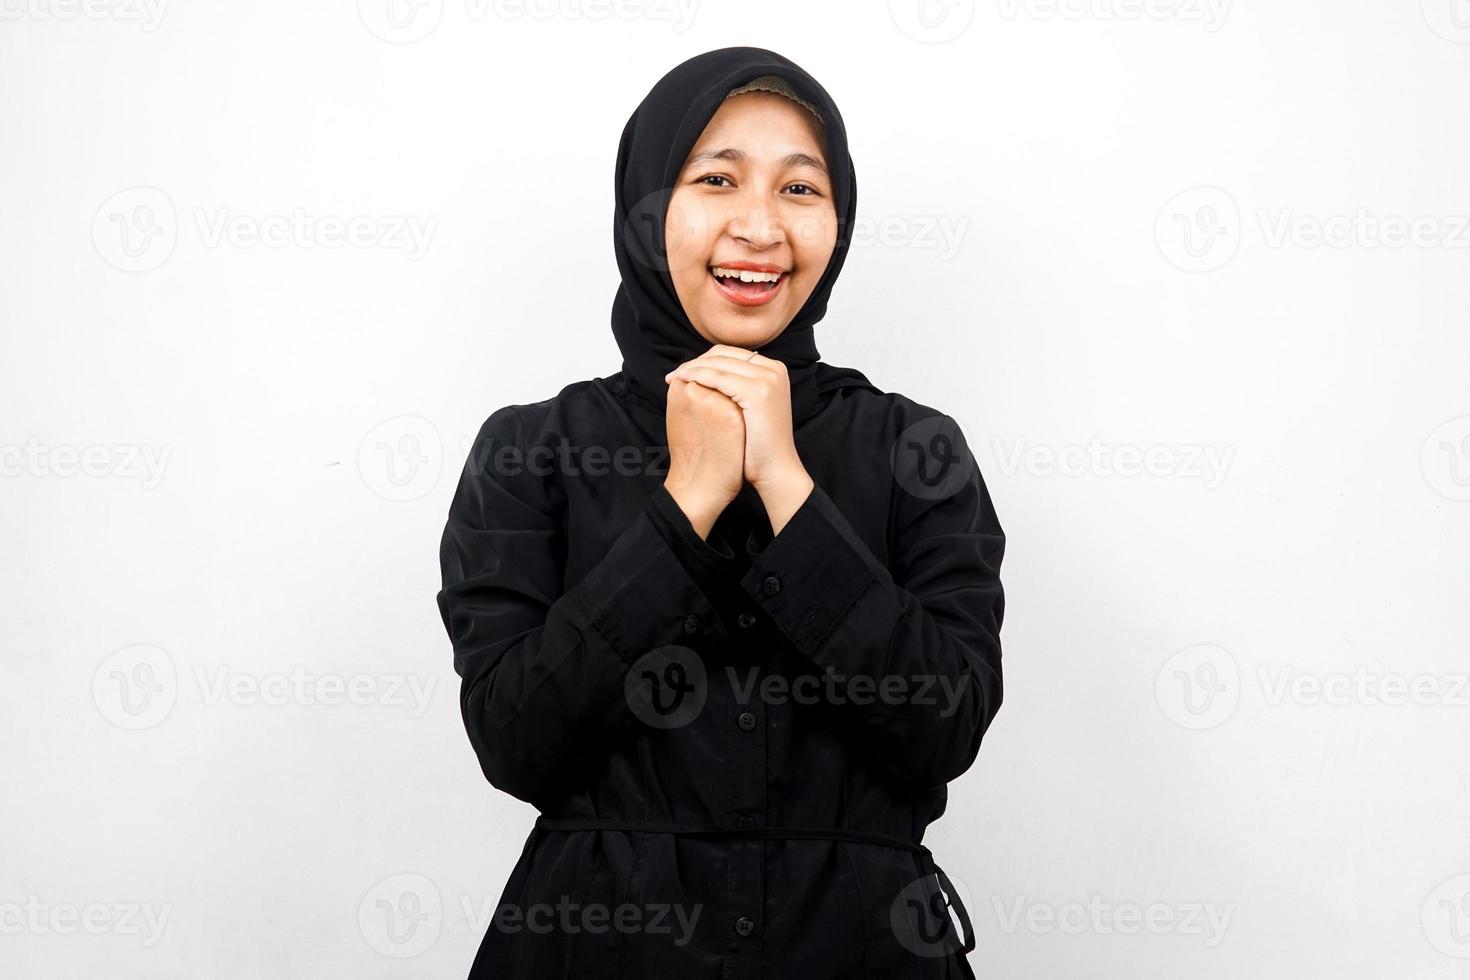 belle jeune femme musulmane asiatique choquée, surprise, expression wow, main tenant un smartphone avec écran blanc ou vierge, promotion de l'application, promotion du produit, présentation de quelque chose, isolée photo